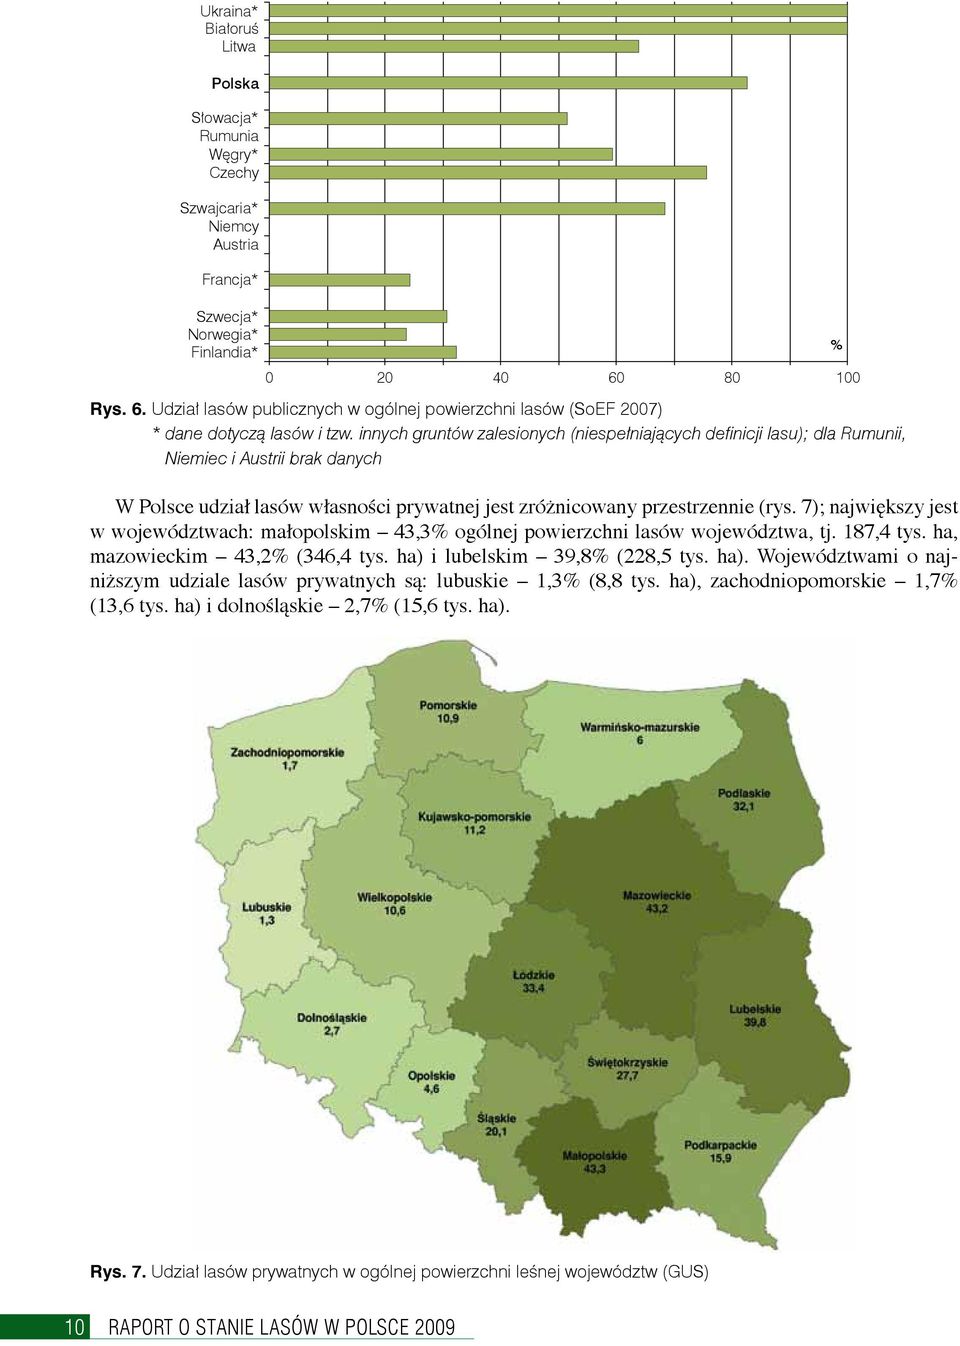 innych gruntów zalesionych (niespełniających definicji lasu); dla Rumunii, Niemiec i Austrii brak danych W Polsce udział lasów własności prywatnej jest zróżnicowany przestrzennie (rys.